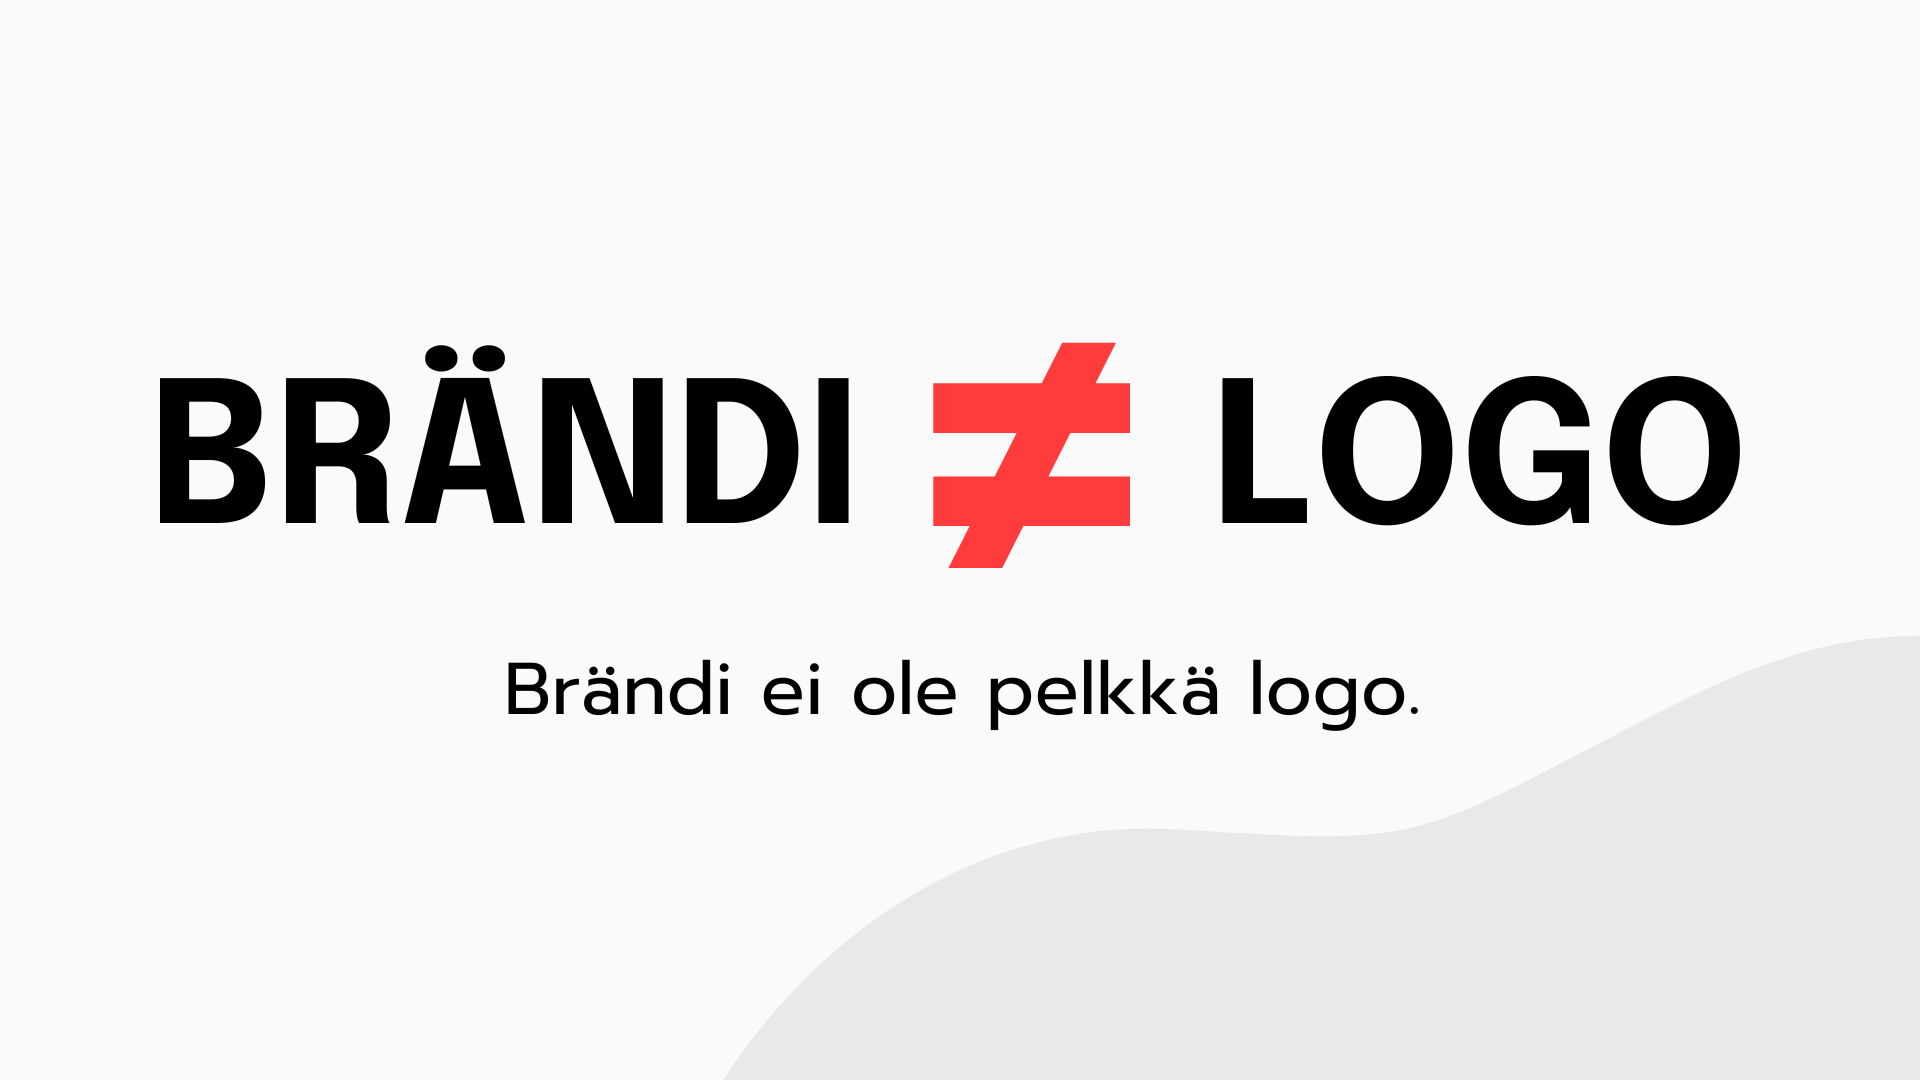 Brändi ≠ logo. Brändi ei ole pelkkä logo.